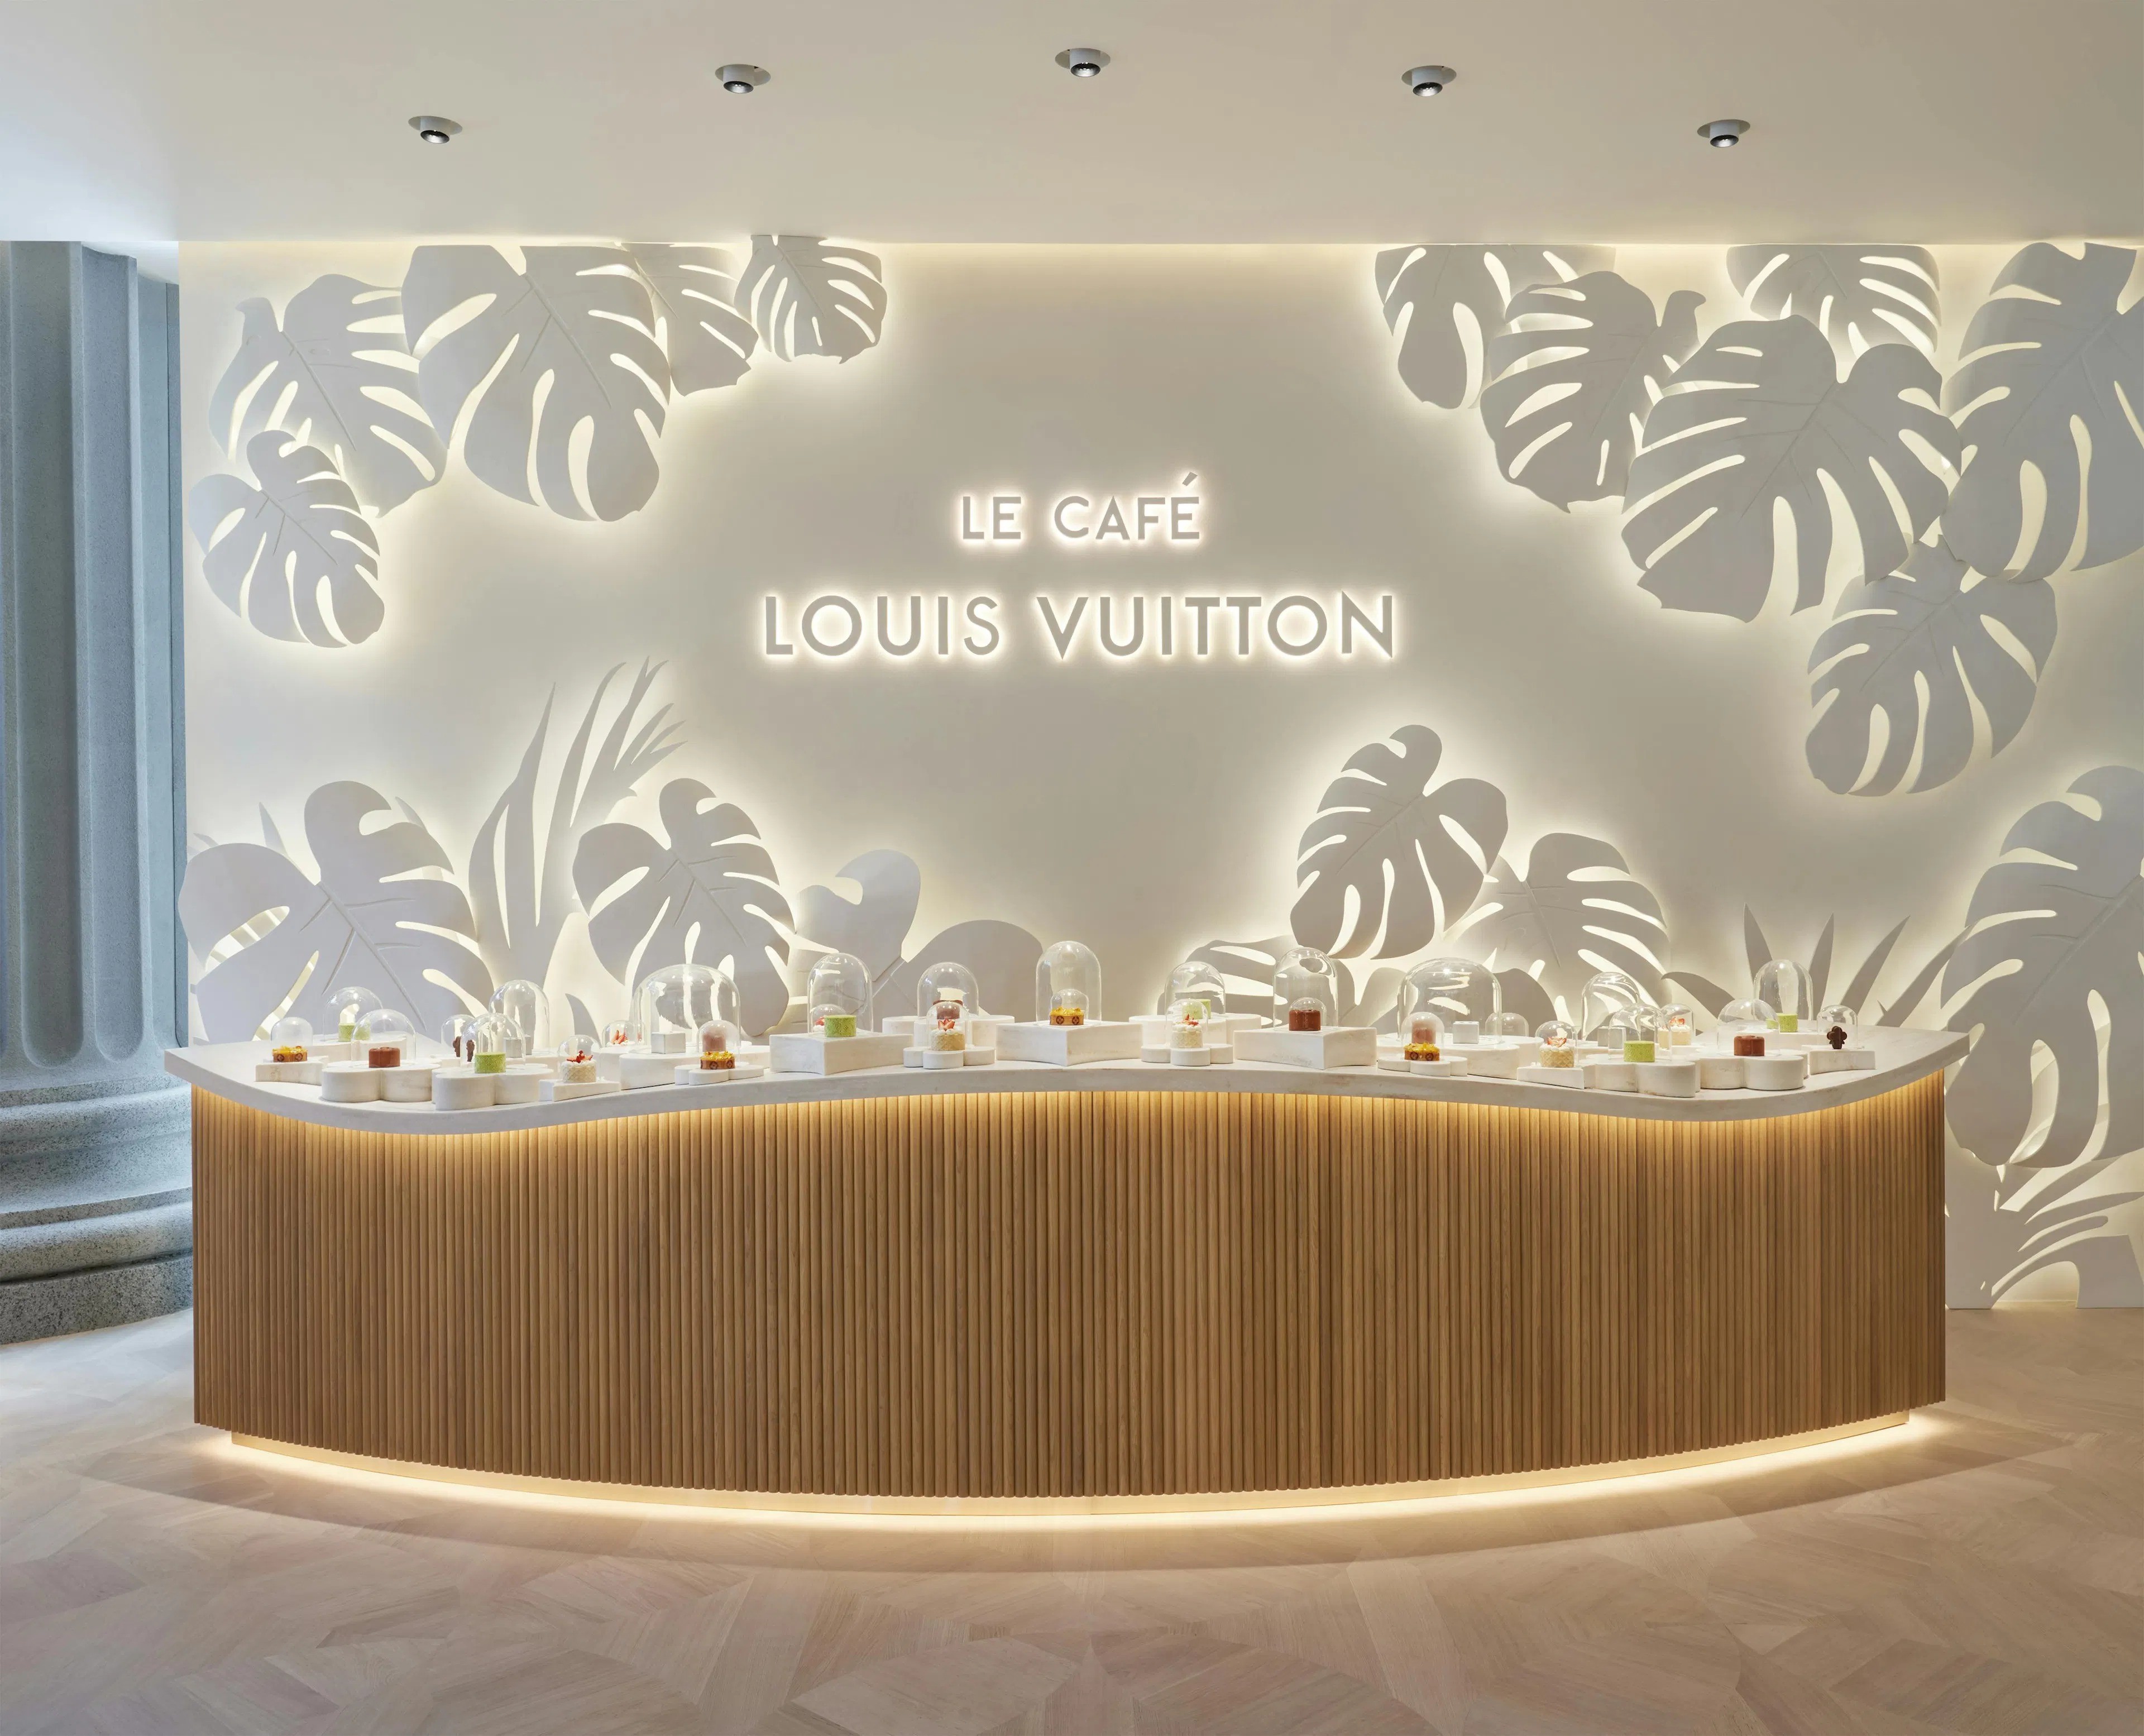 Louis Vuitton cafe